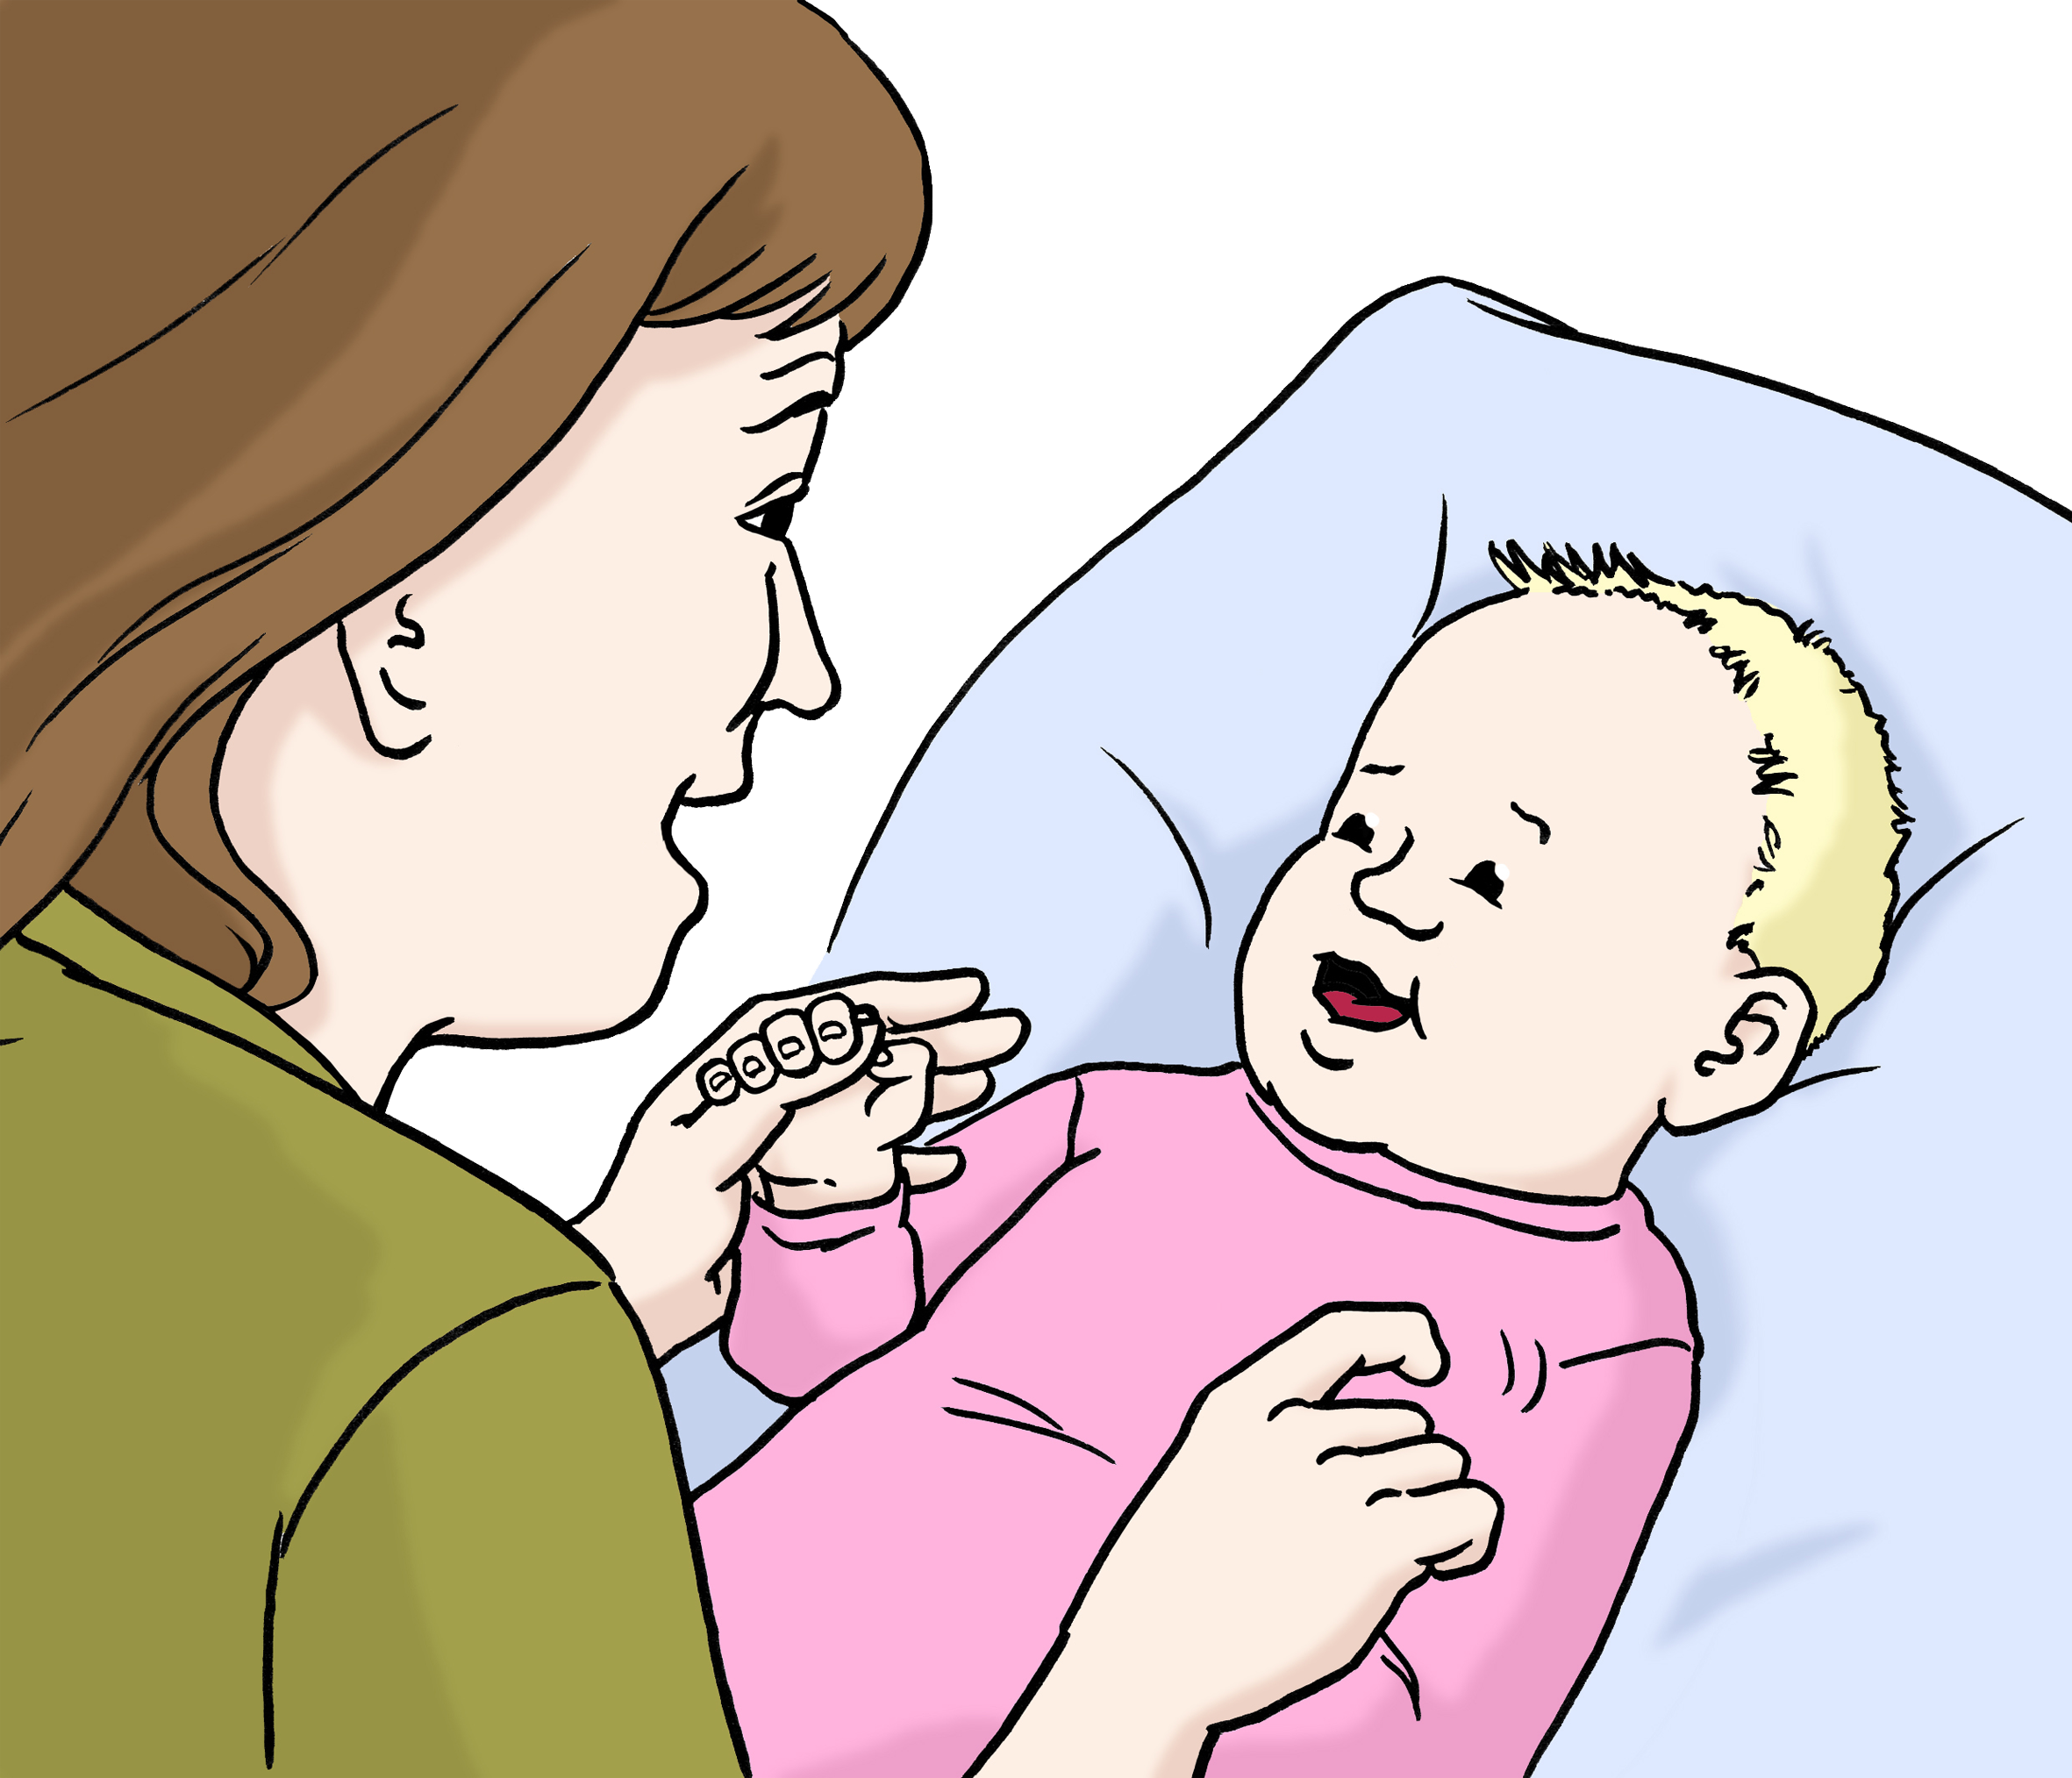 Bildbeschreibung: Eine Frau spielt mit einem Baby